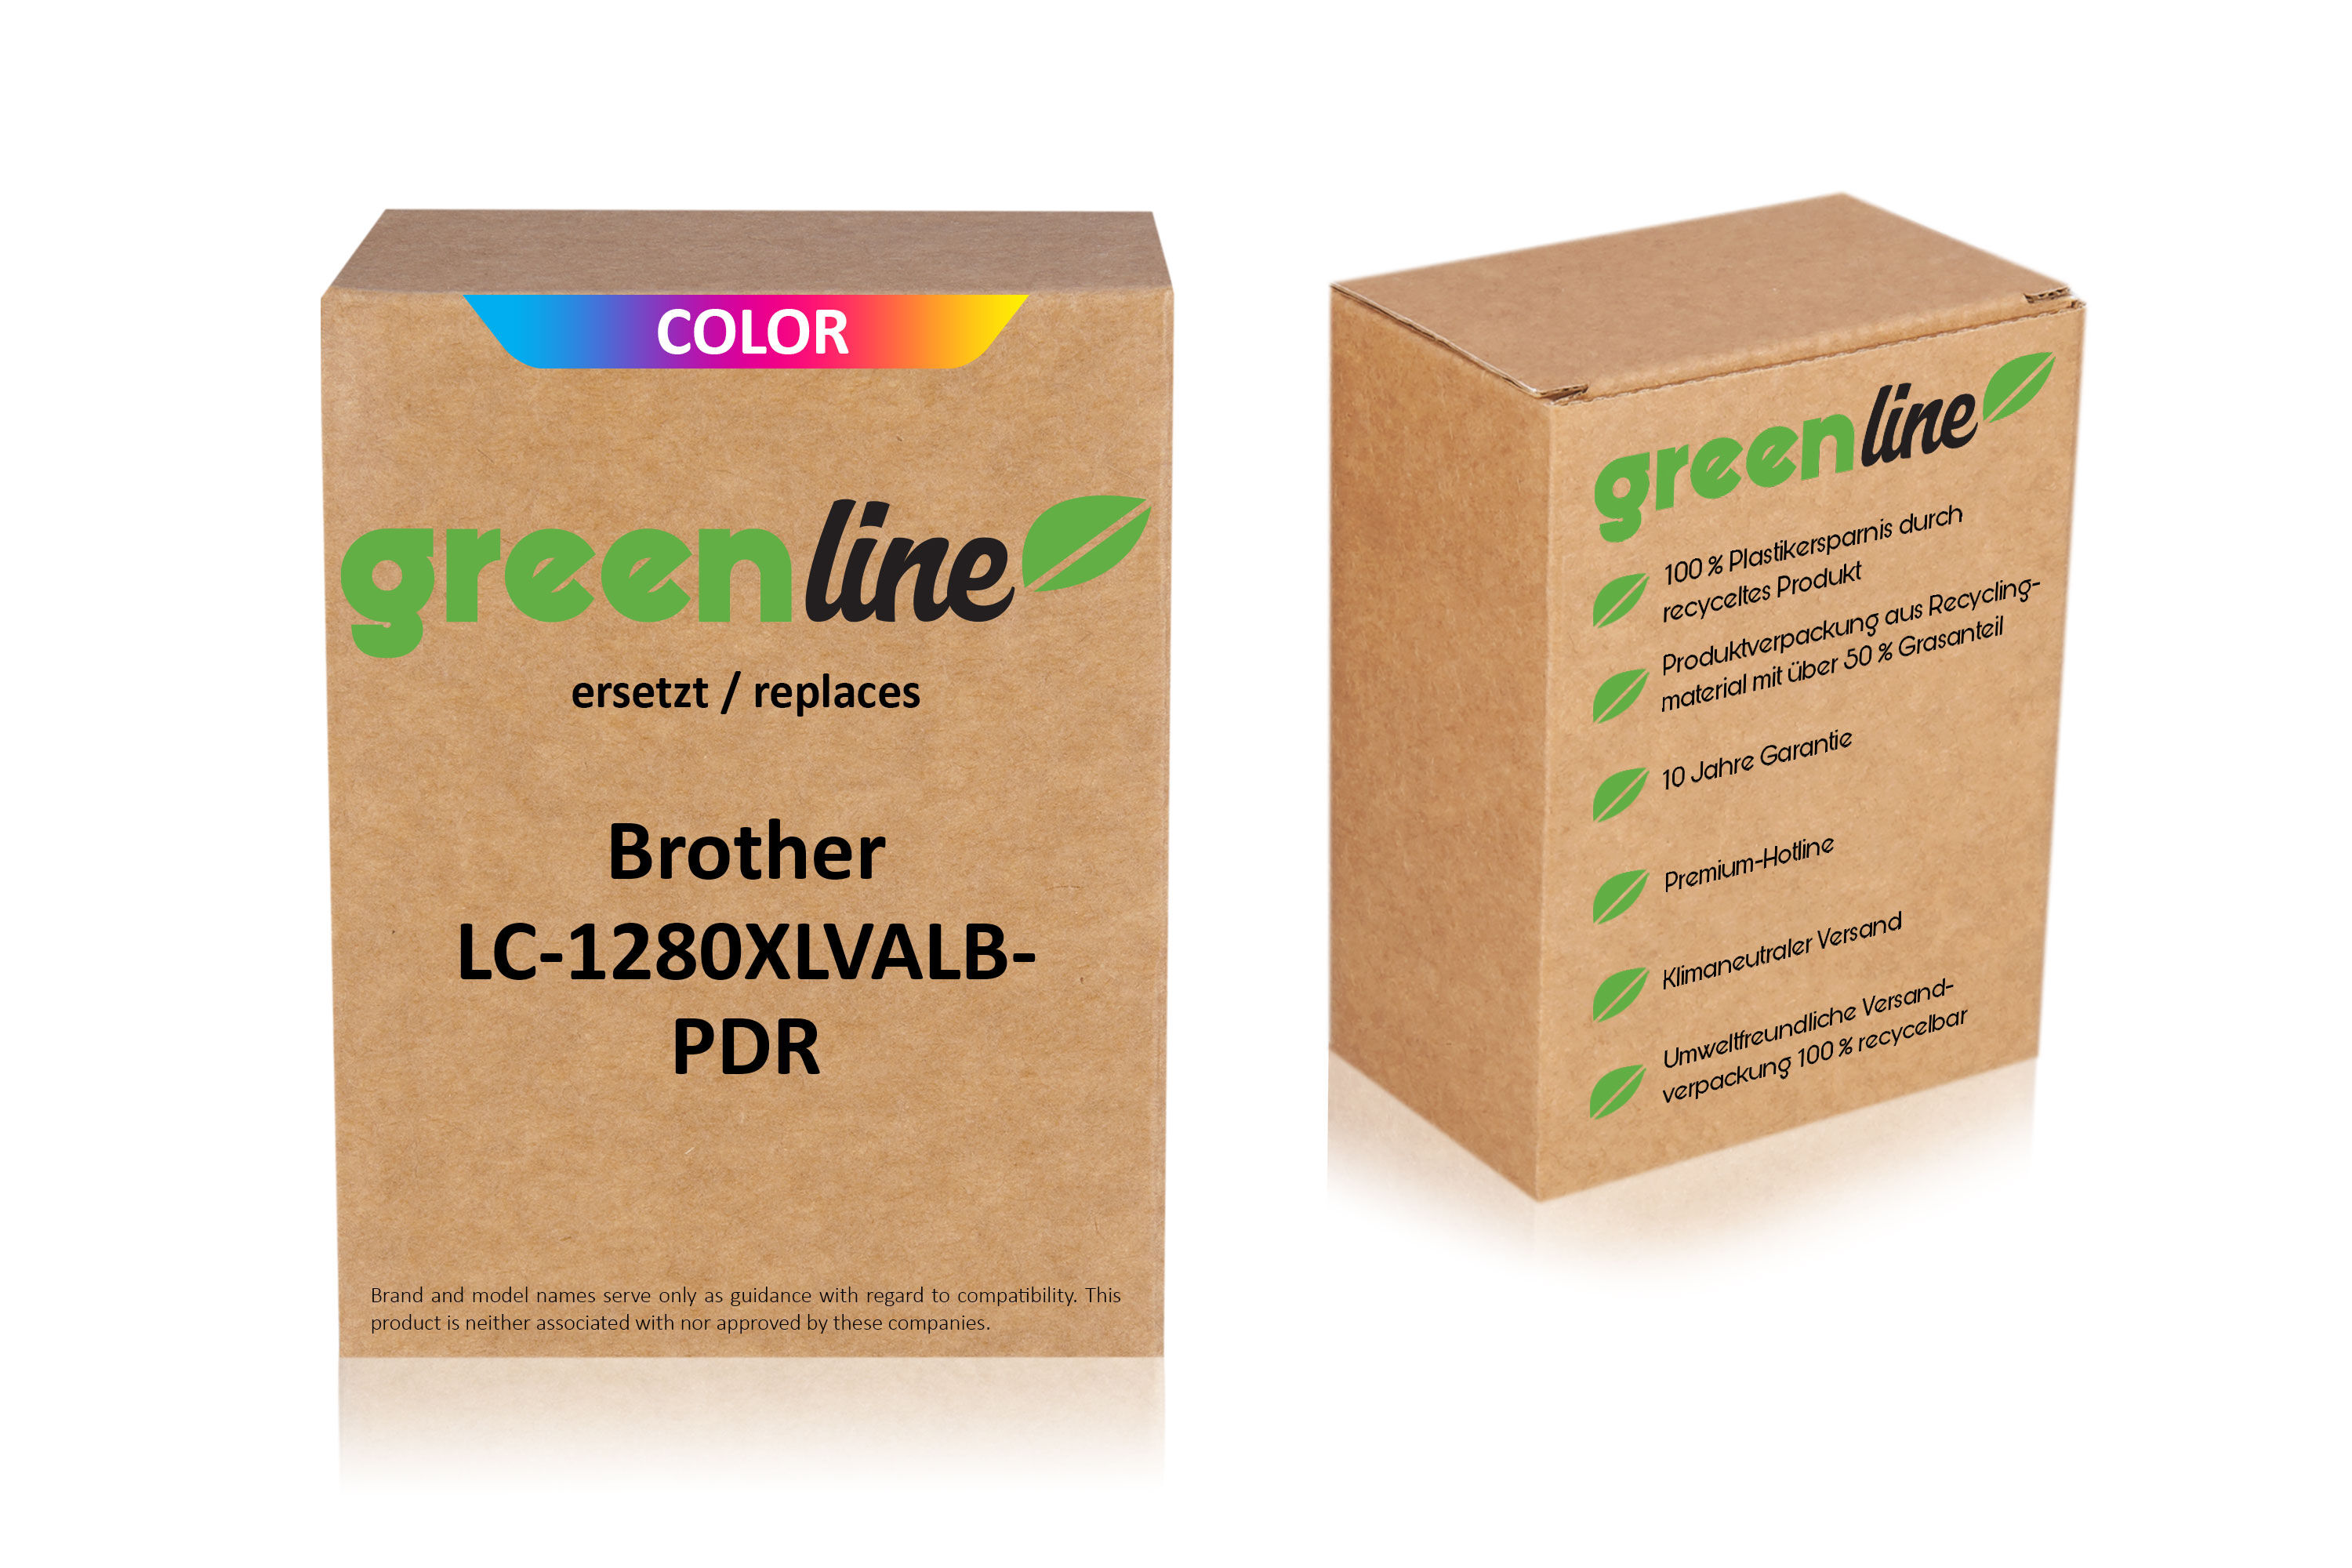 TonerPartner Kompatibel zu Brother LC-1280 XL VAL BPDR Tintenpatrone farbe Multipack (4 St.), 6.000 Seiten, 1,03 Rp pro Seite, Inhalt: 105 ml von TonerPartner